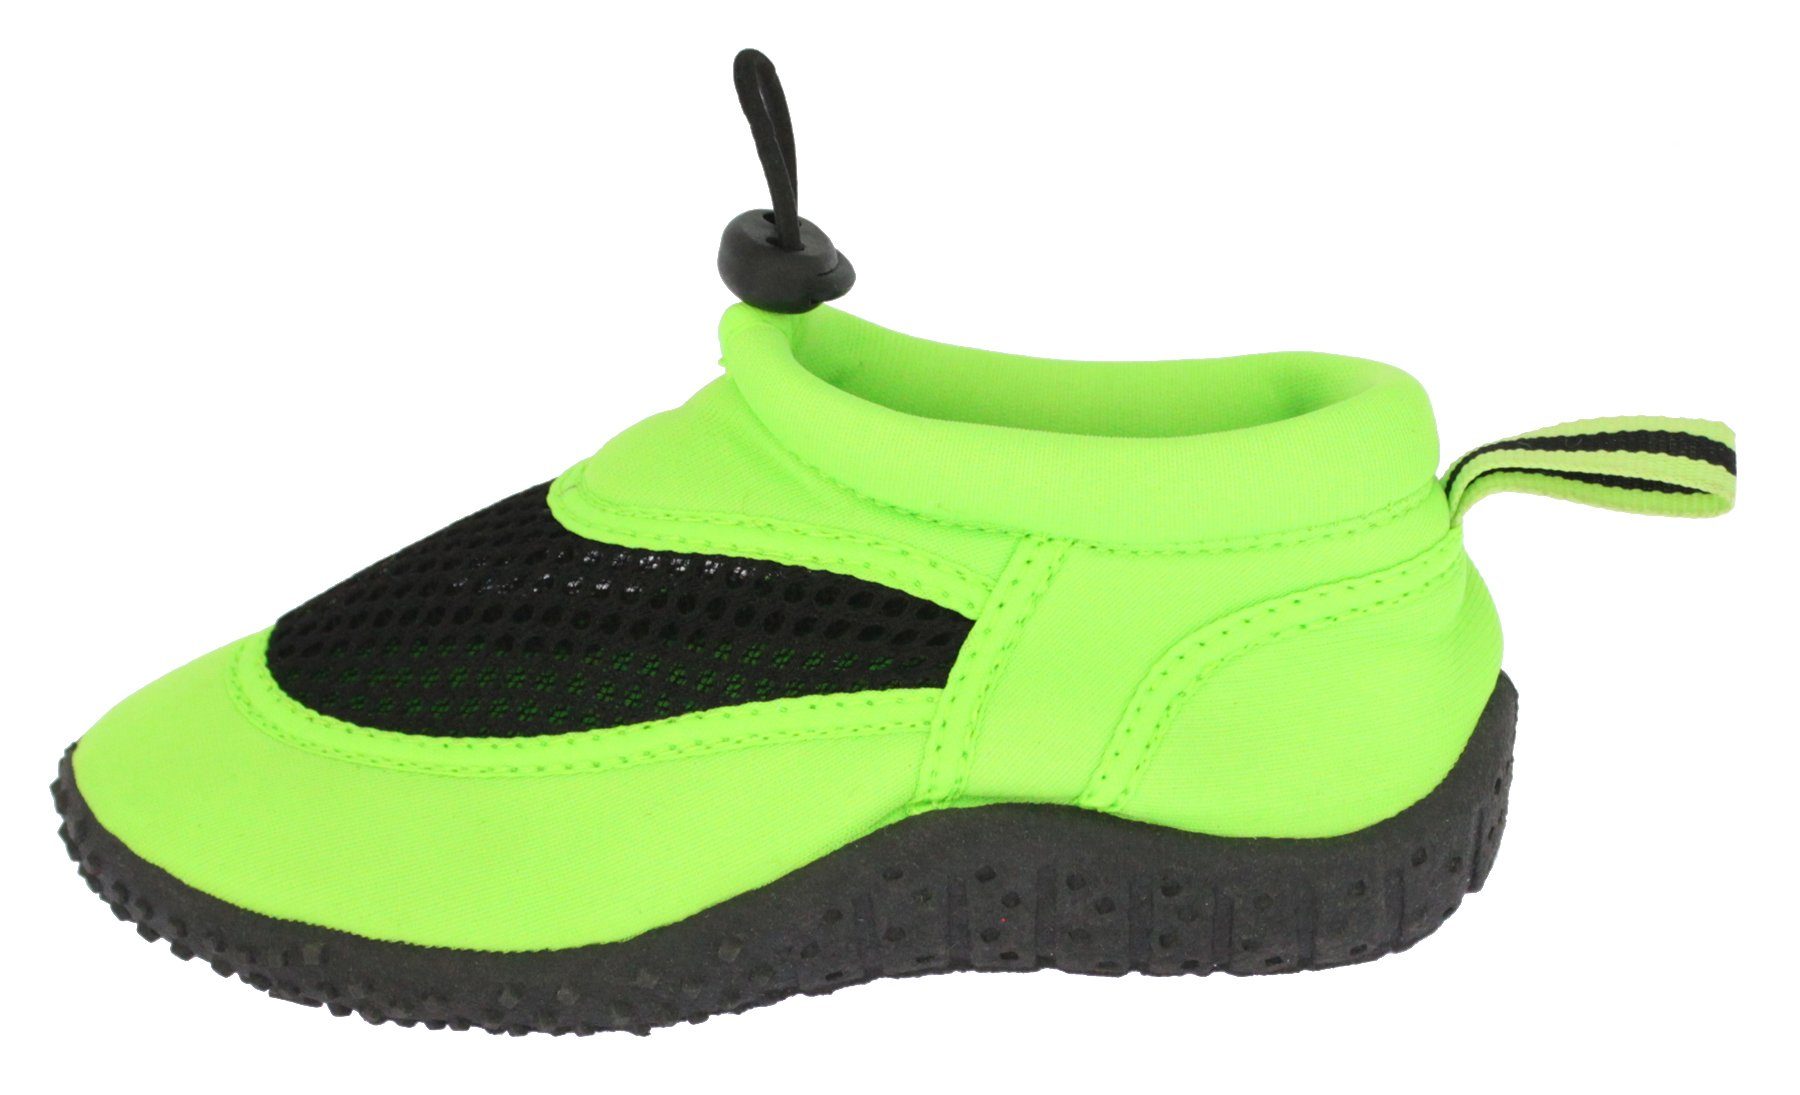 stabile flexible Aqua Füße Badeschuh für und Badeschuh grün rutschfeste Beck Strand) Laufsohle, (leichte, Pool geschützte Schuhe, an schnelltrocknend flexible,